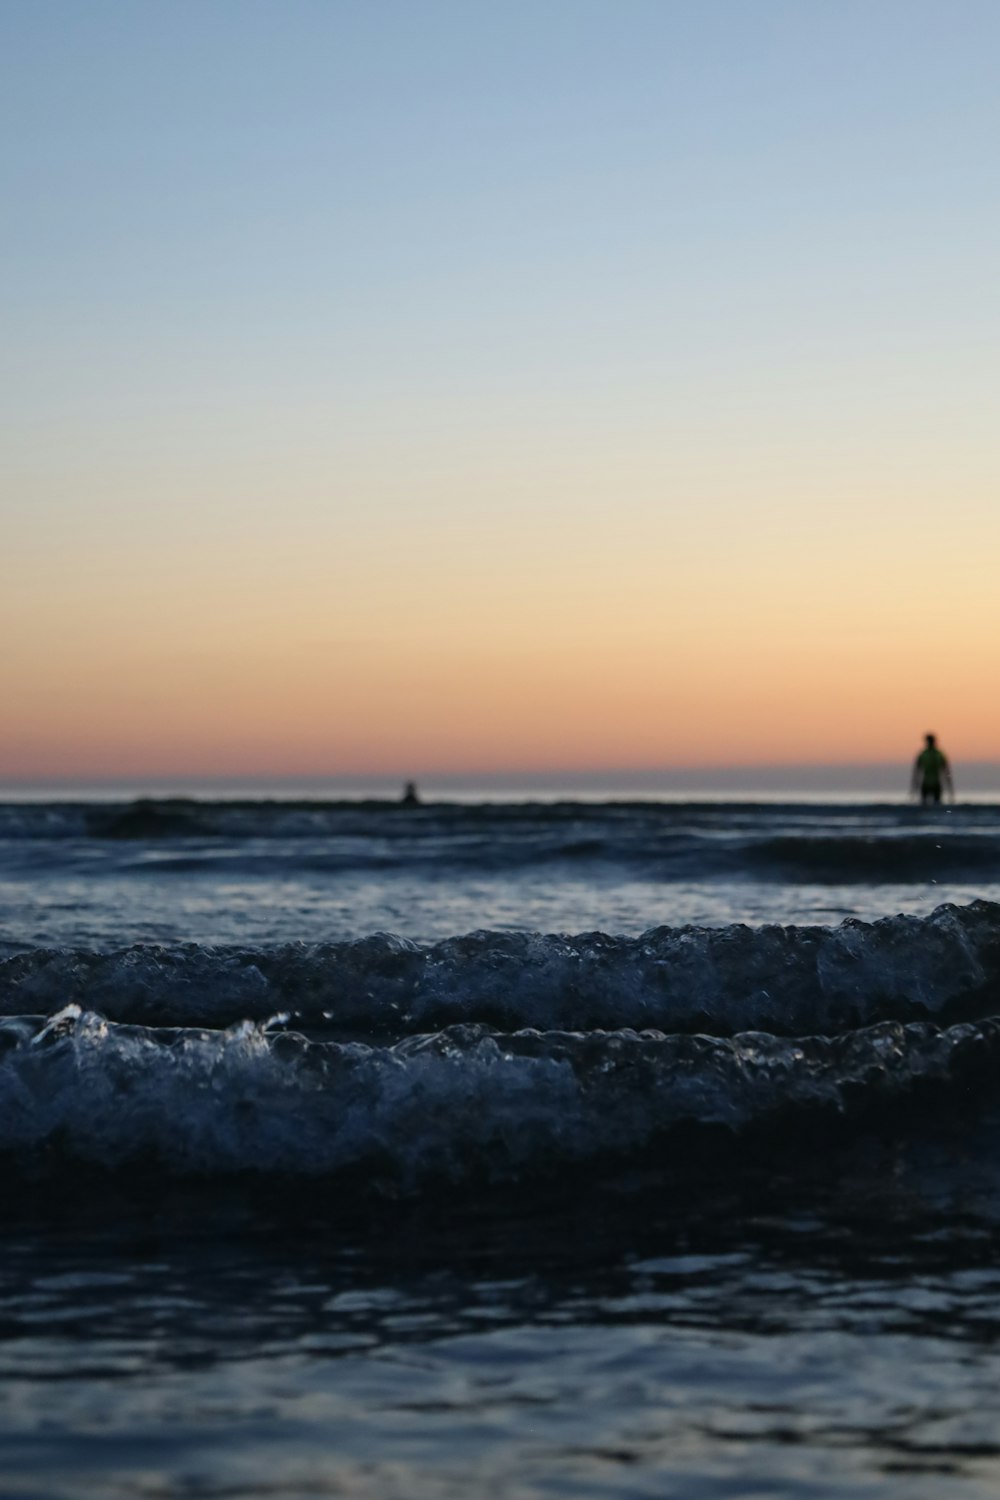 una persona montando una tabla de surf encima de una ola